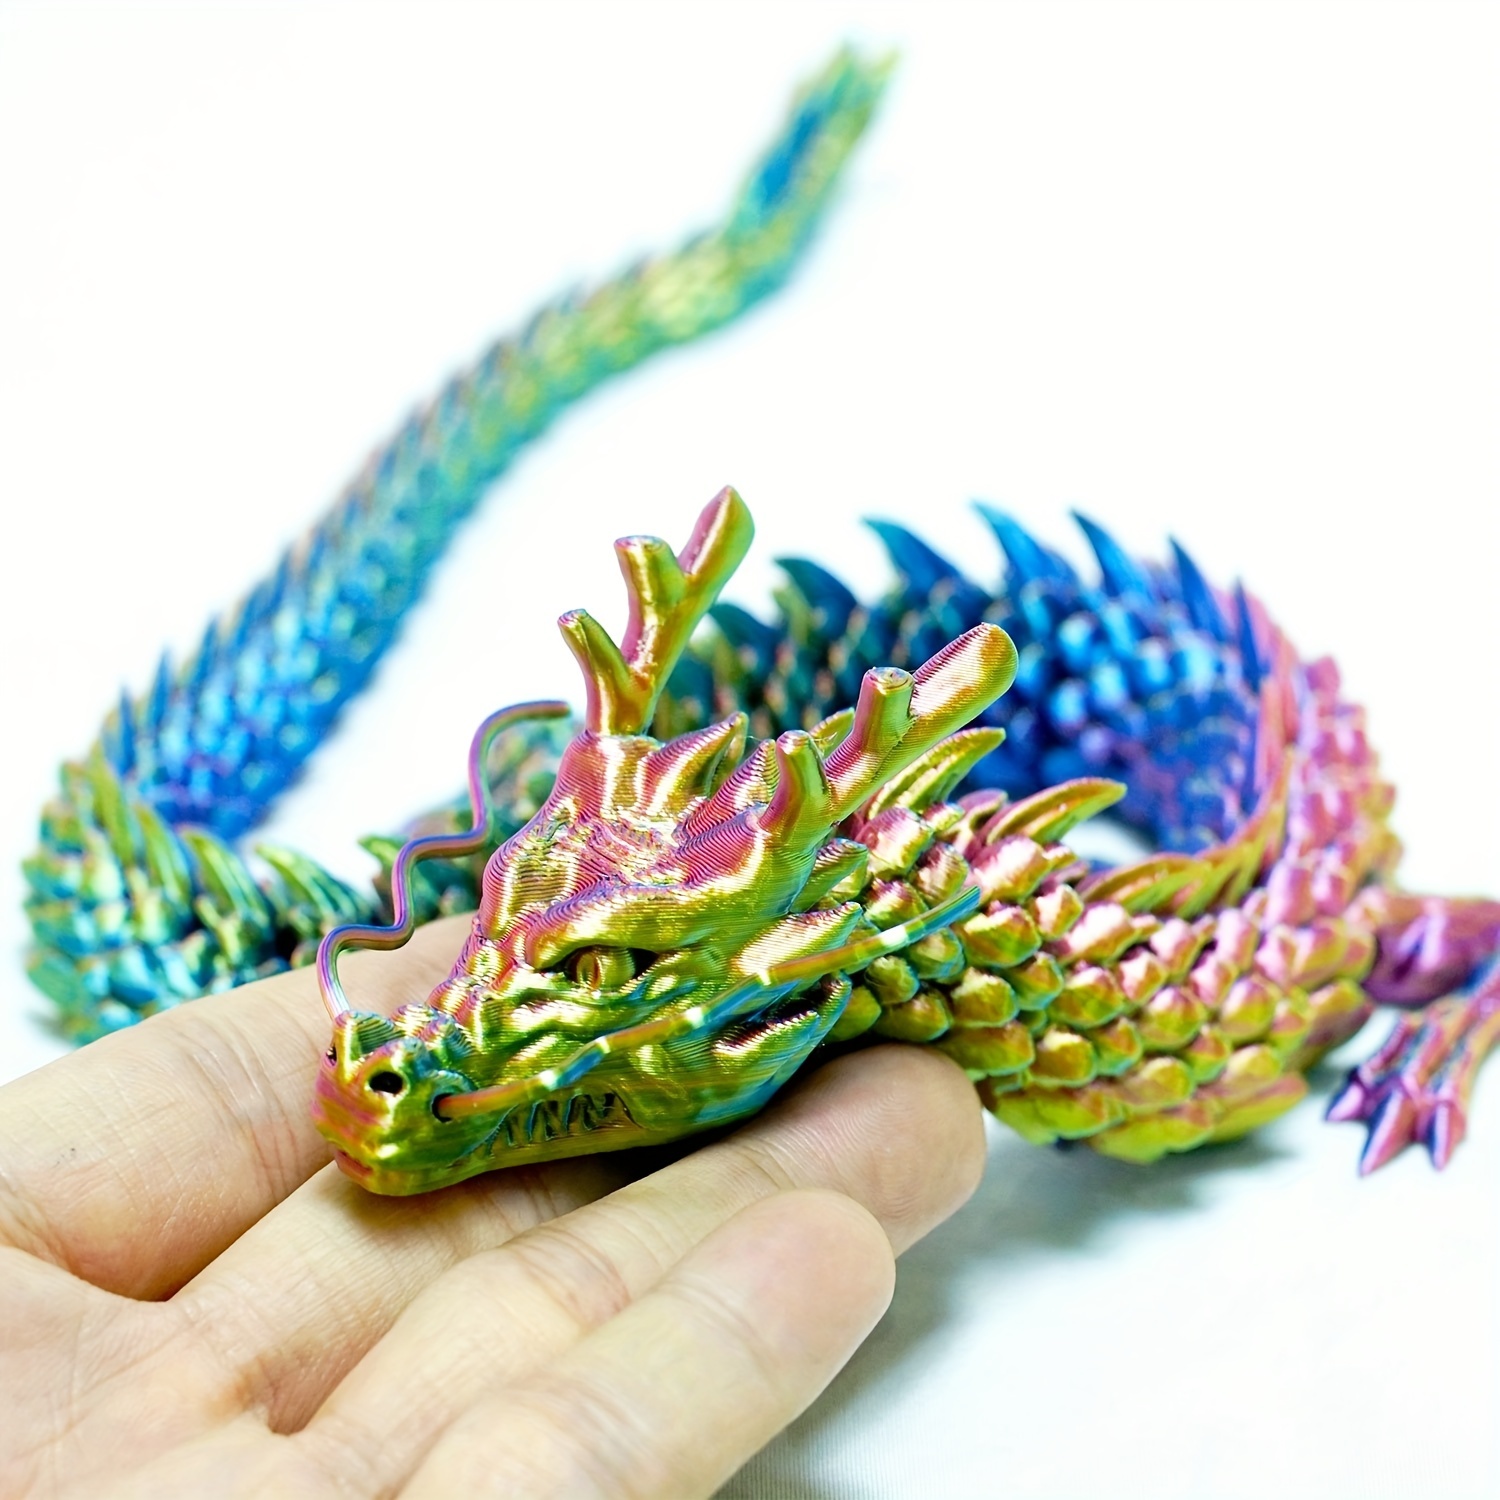 ファンタジーカラフルな3D印刷ドラゴン、一体成形、クリエイティブグッズおもちゃ、中国のドラゴンの装飾品、セブンドラゴンビーズモデルギフト、手作り、水槽の形状